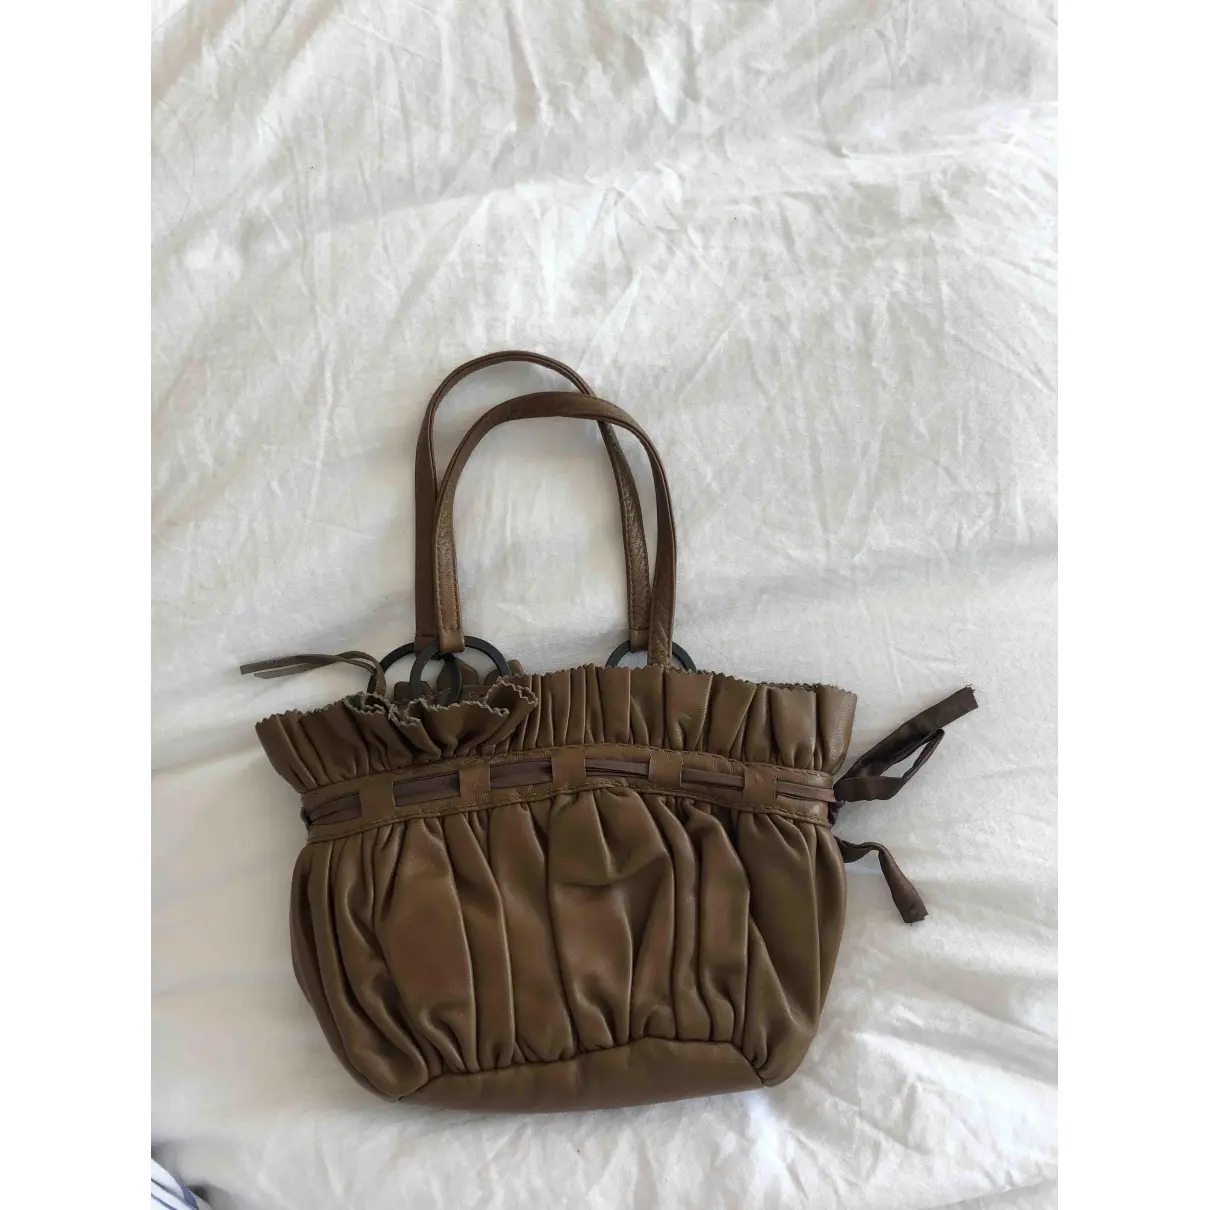 Buy Jamin Puech Leather handbag online